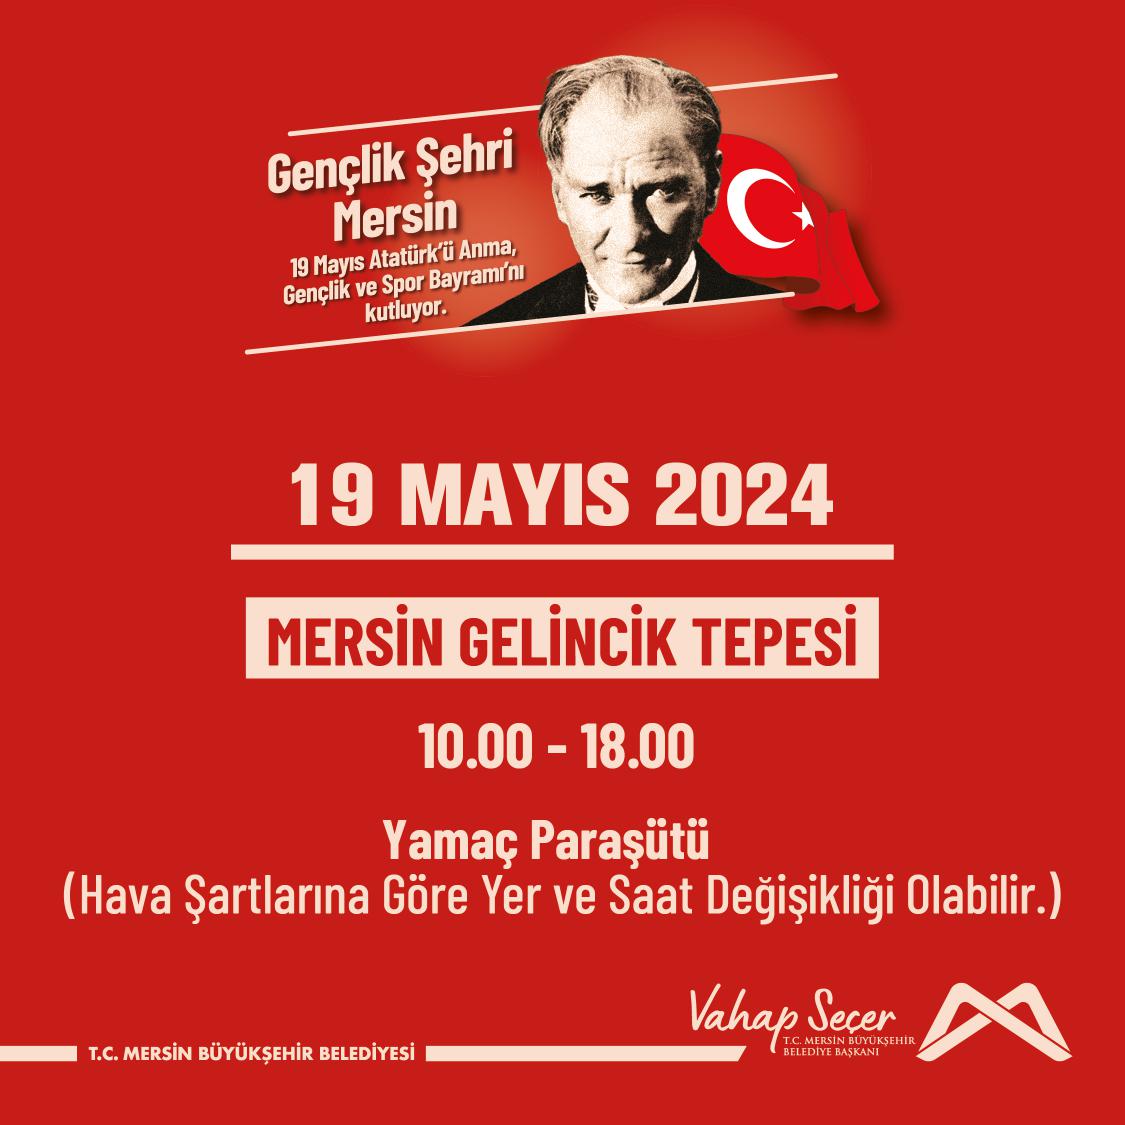 19 Mayıs Atatürk'ü Anma, Gençlik ve Spor Bayramı Yamaç Paraşütü Etkinliğinde buluşalım!